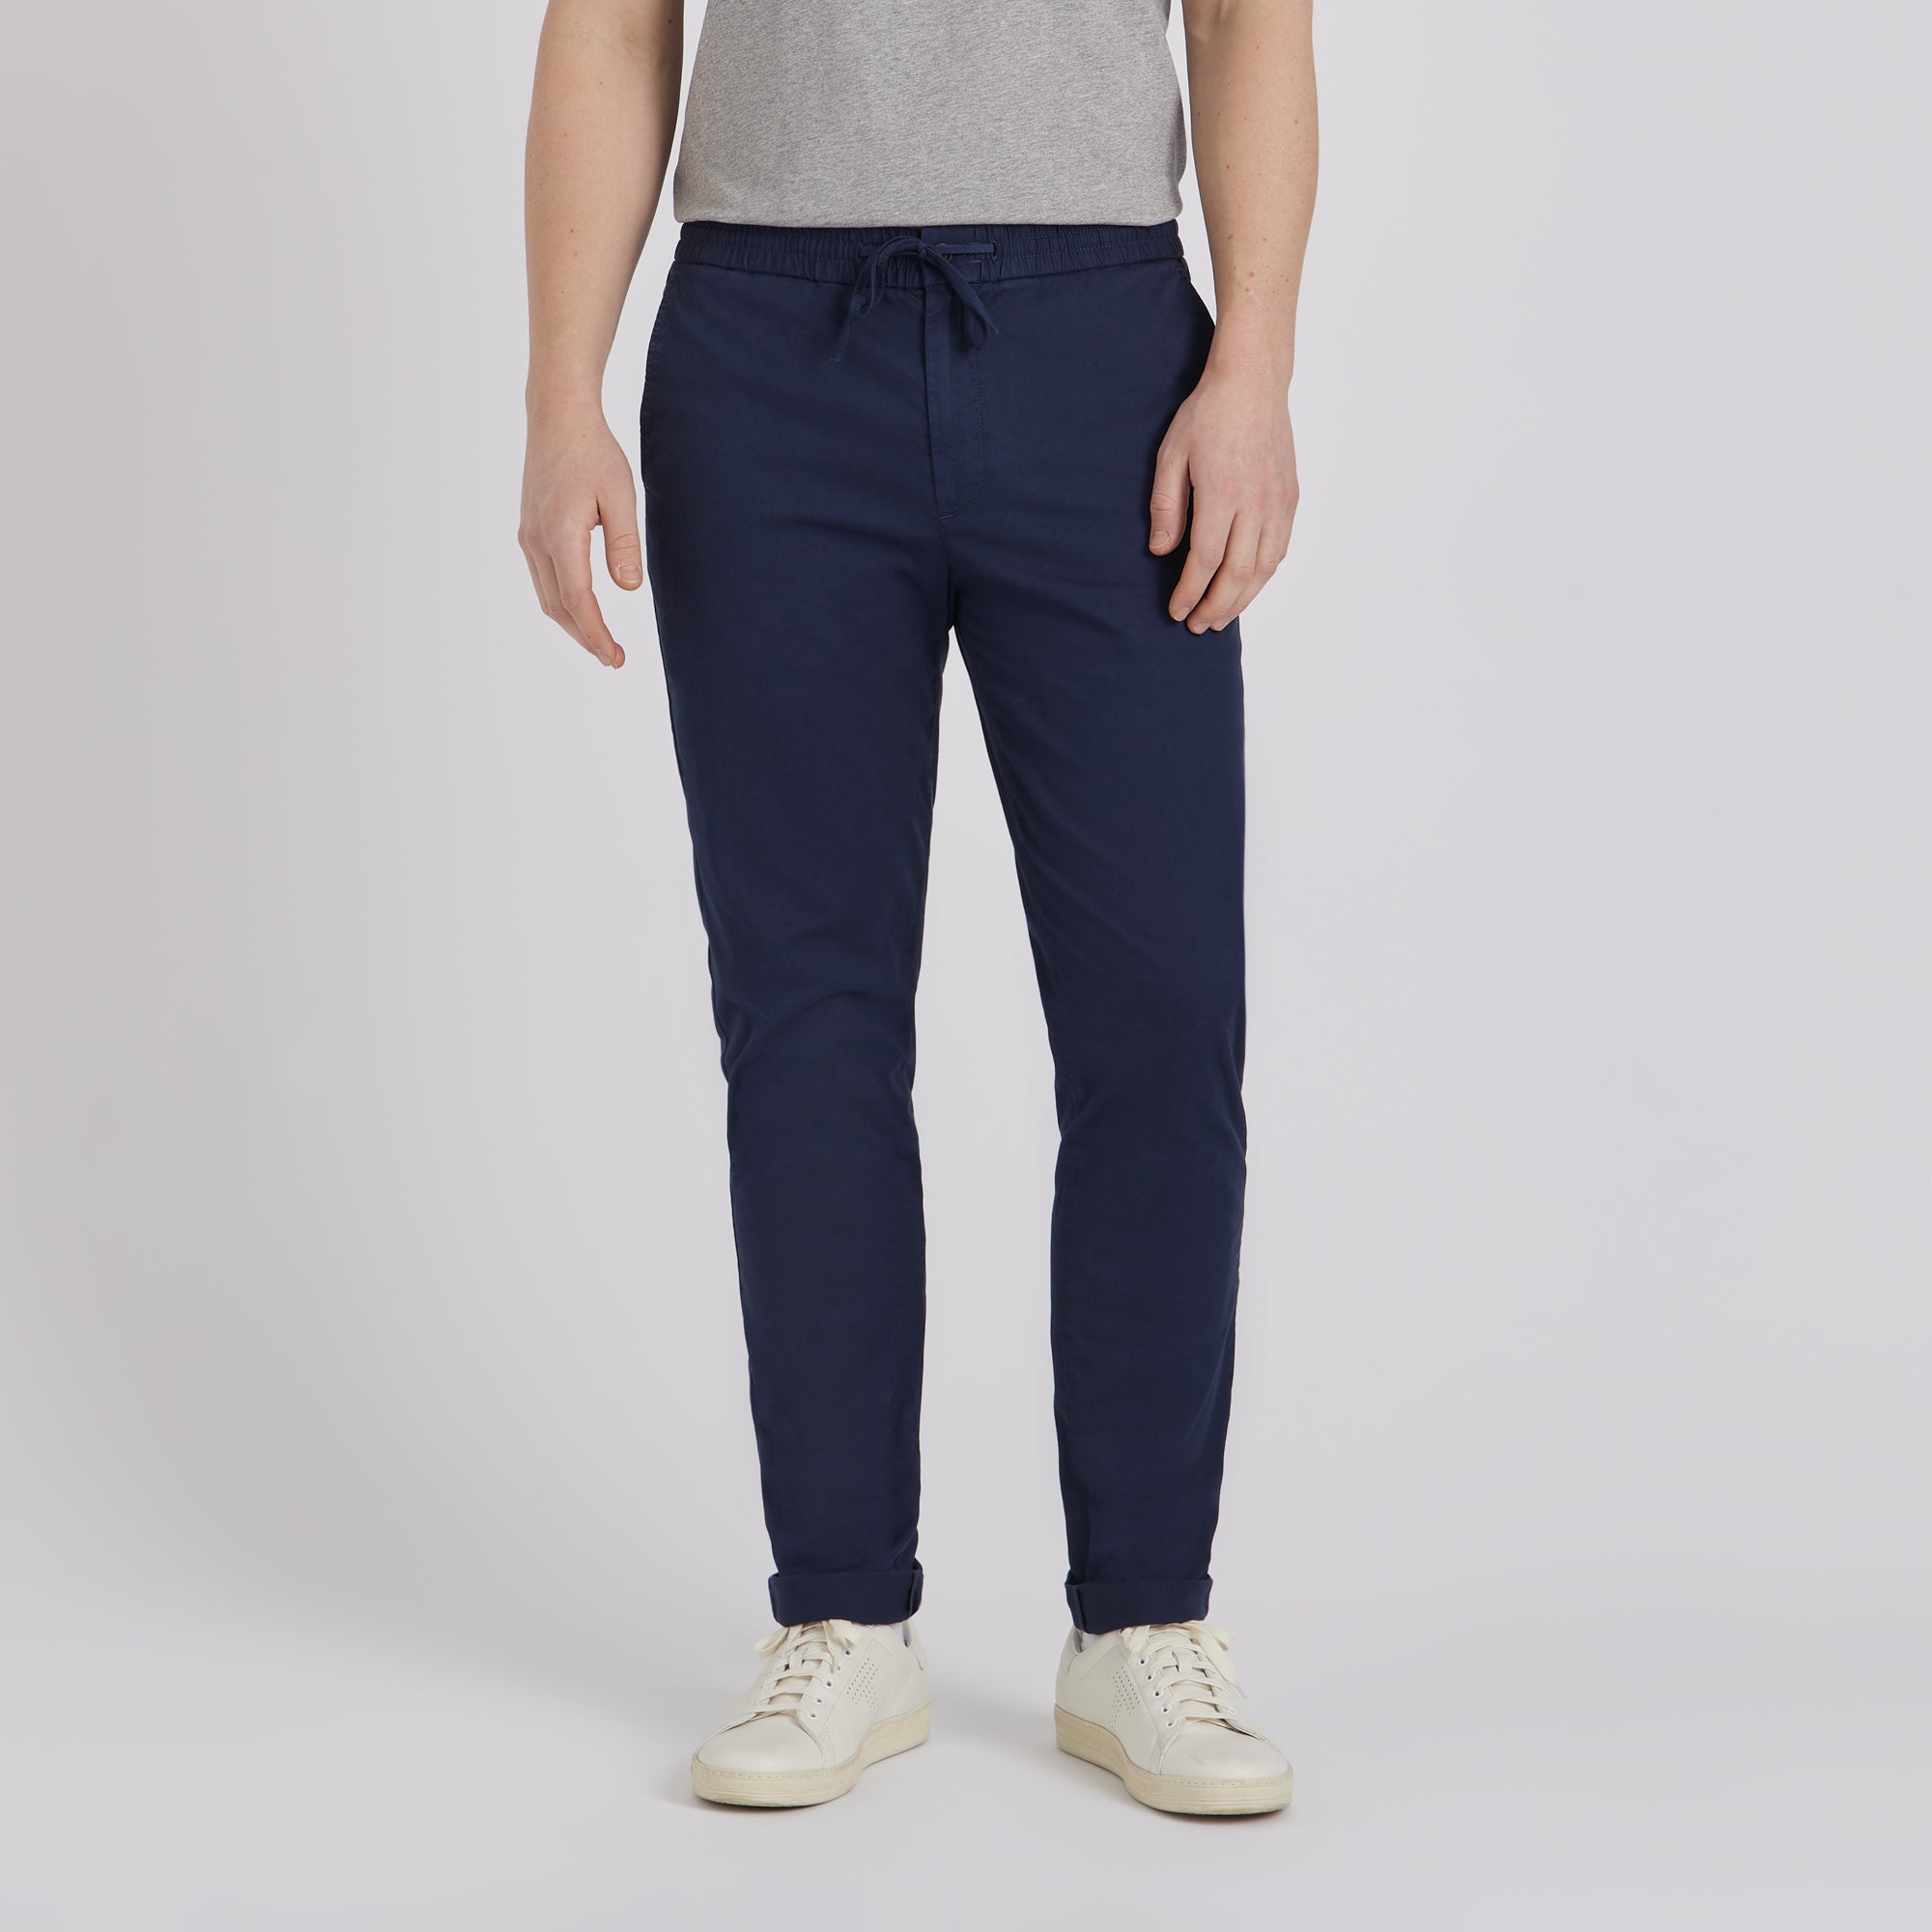 Men's New Arrivals Collection - Custom-Fit Menswear - SPOKE - SPOKE